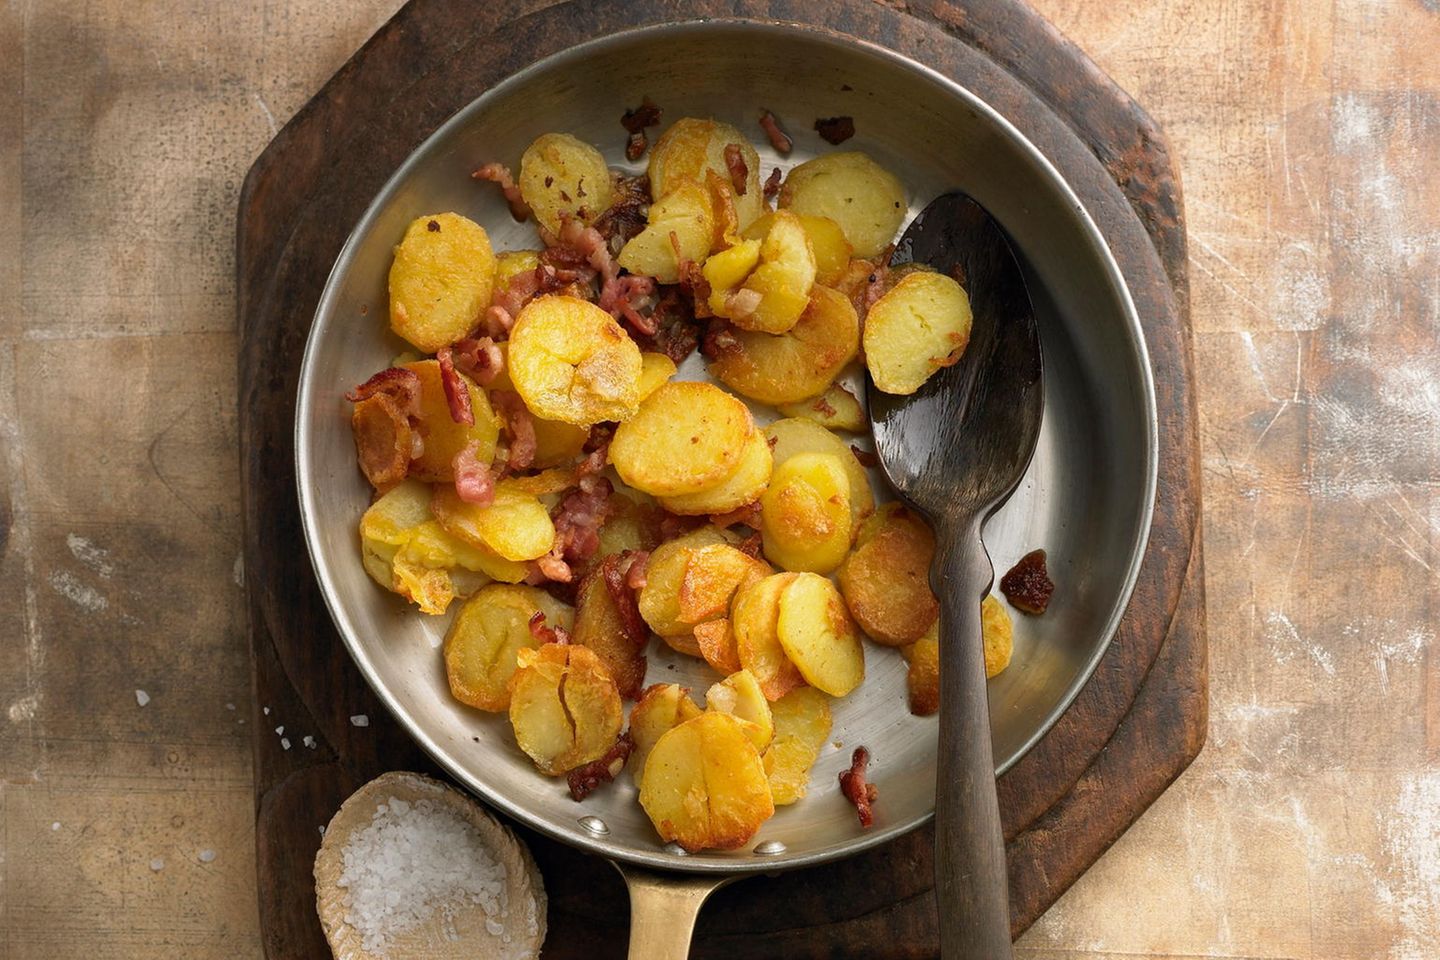 Salami reicht Agentur kartoffeln für bratkartoffeln kochen wie lange ...